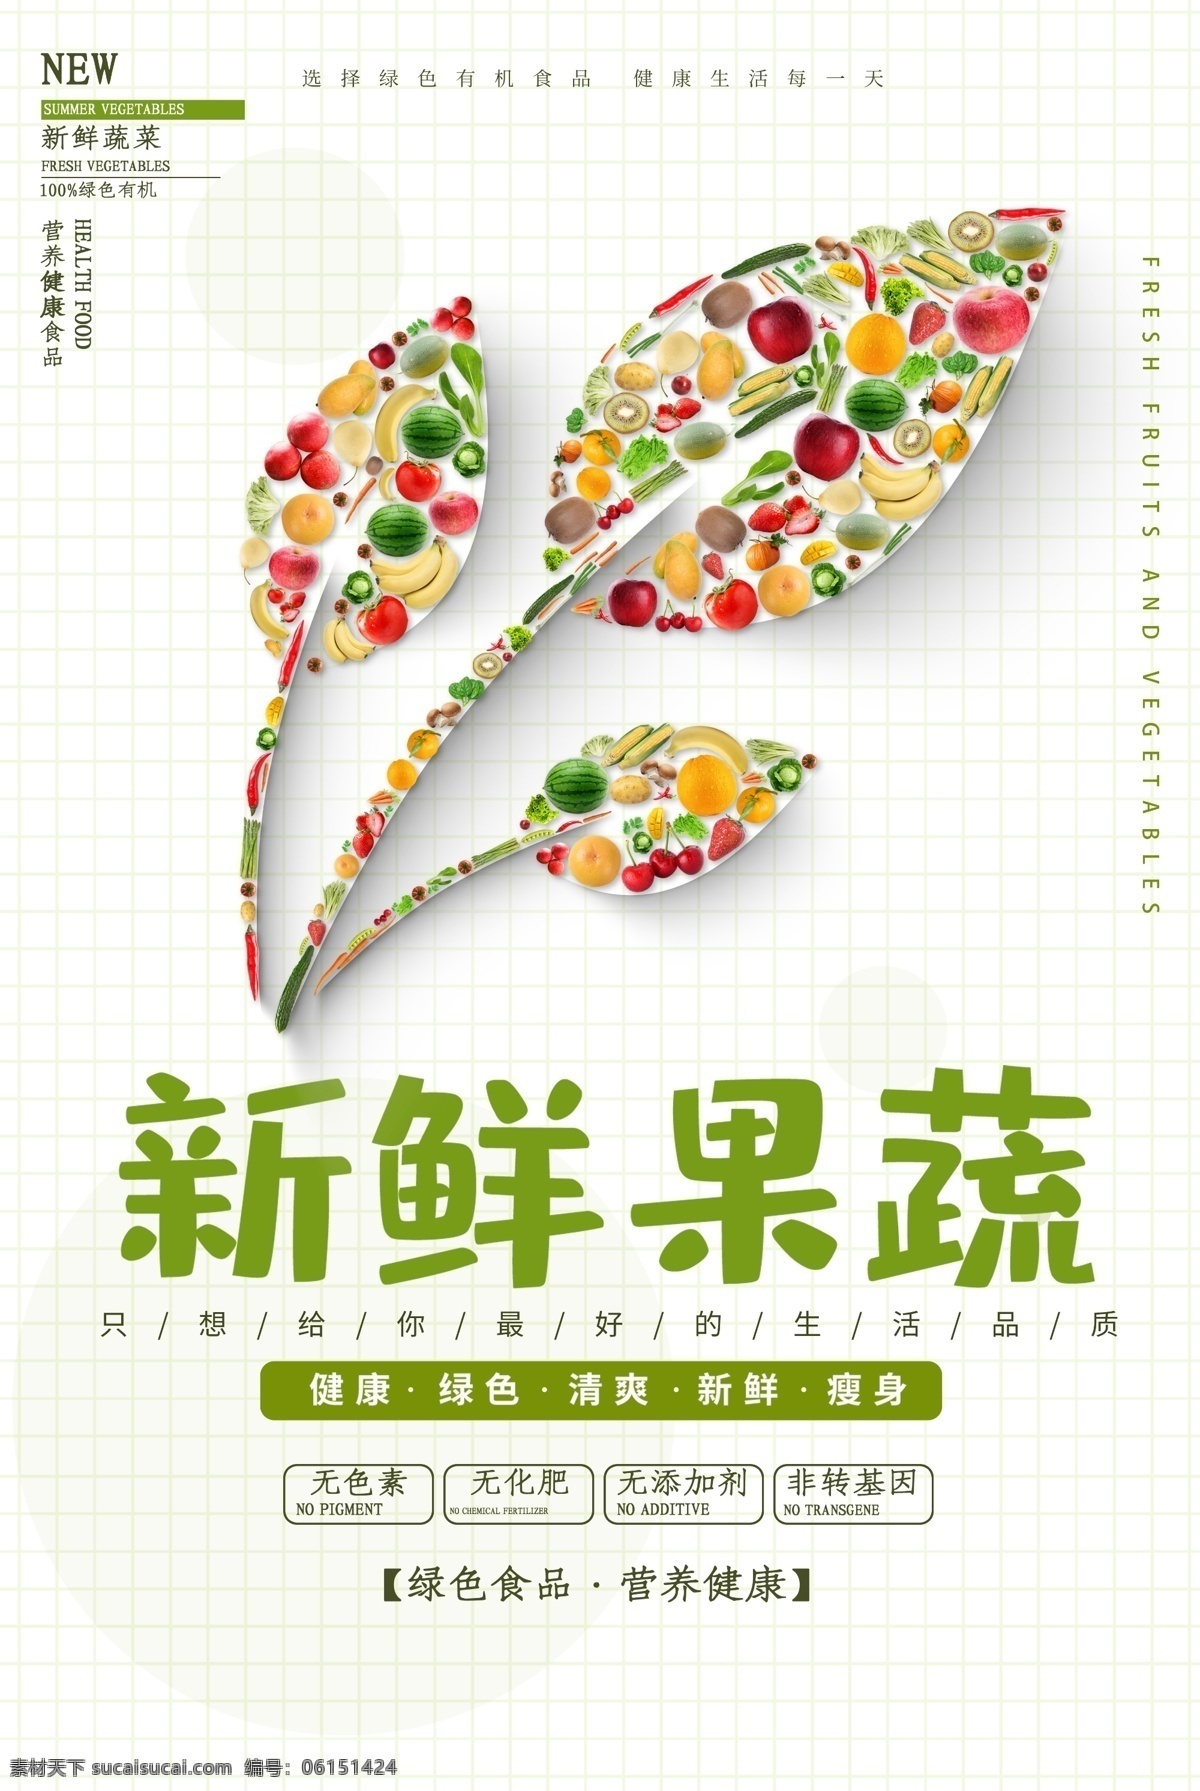 新鲜 果蔬 促销活动 宣传海报 素材图片 新鲜果蔬 促销 活动 宣传 海报 餐饮美食 类